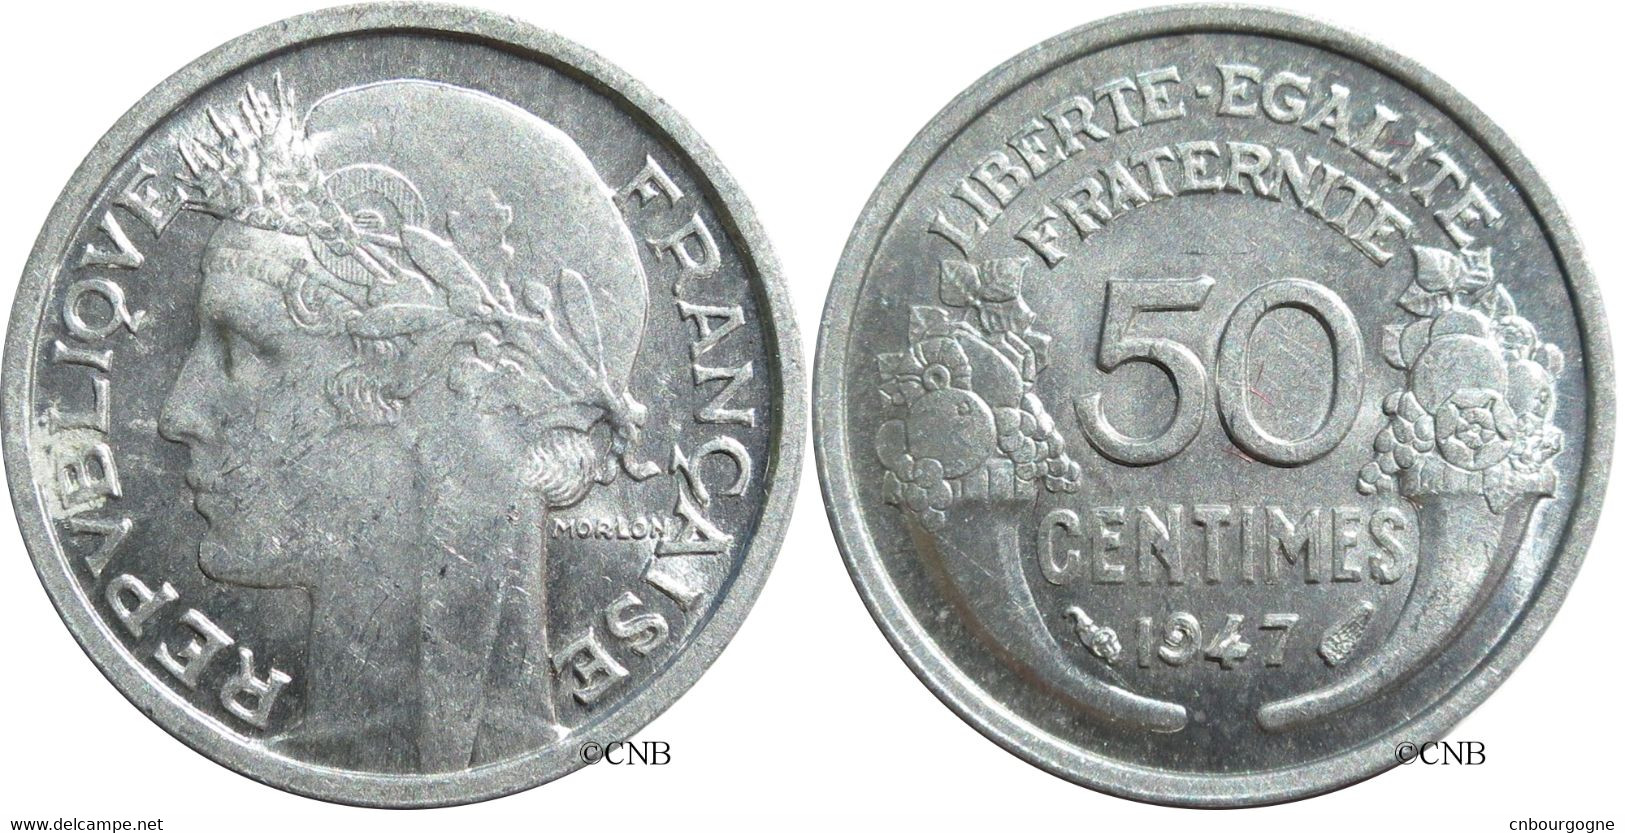 France - IVe République - 50 Centimes Morlon Aluminium, Poids Léger 1947 - SUP+/MS62 - Fra2301 - 50 Centimes